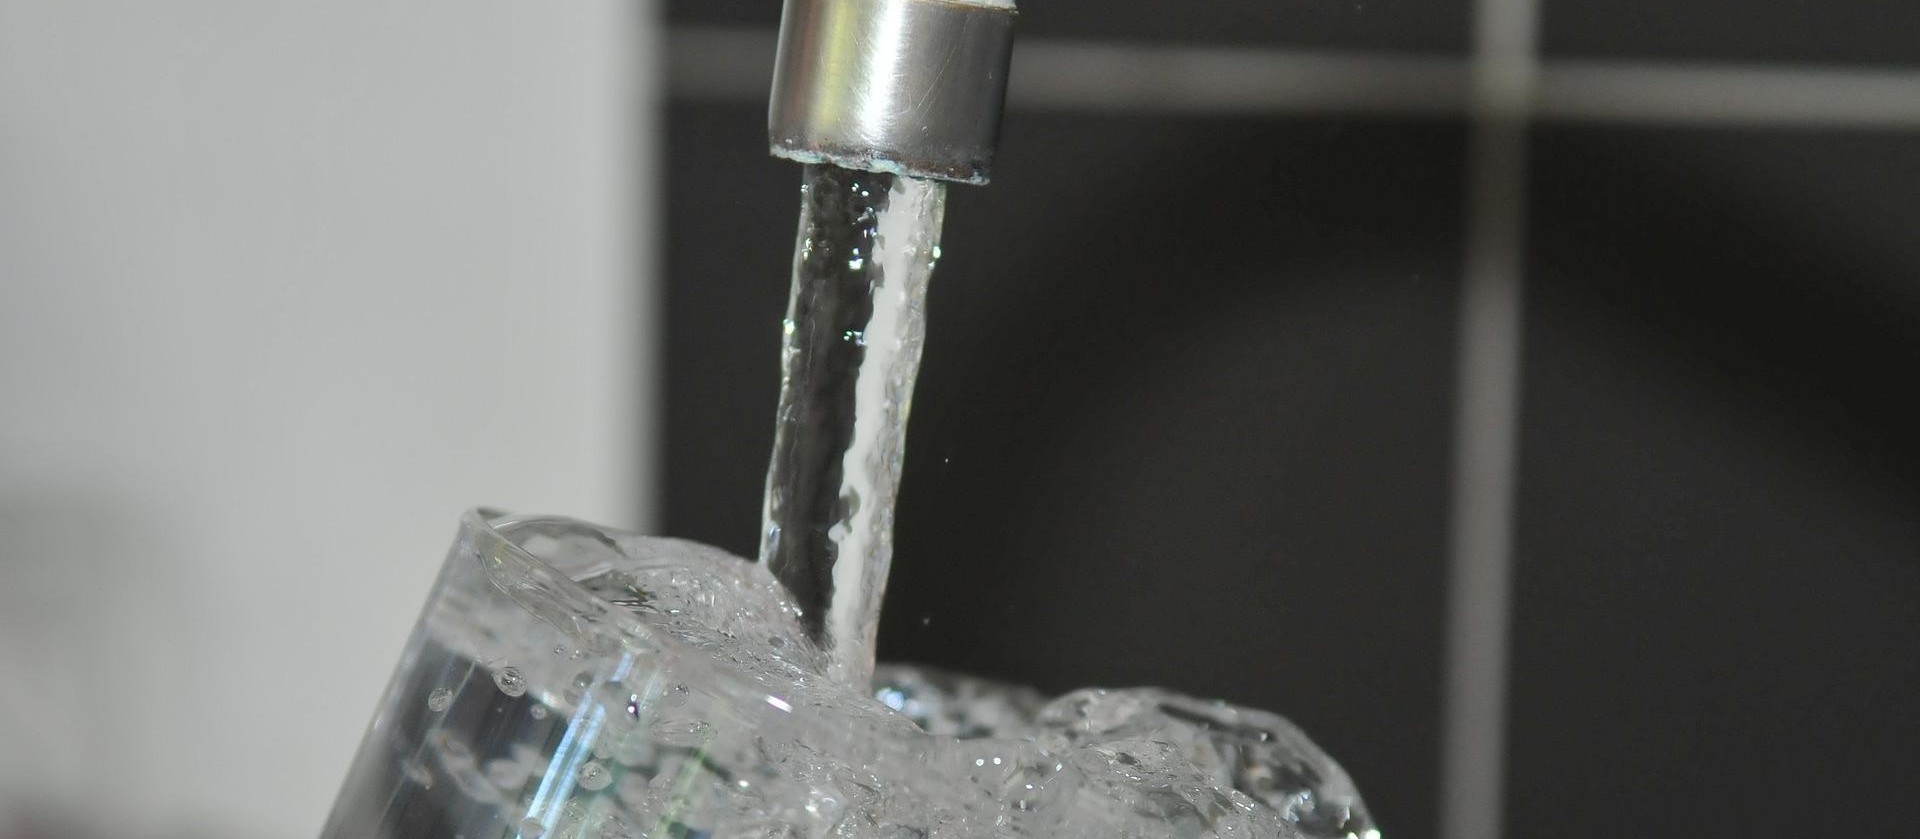 Comissão de Defesa dos Direitos do Consumidor pede esclarecimentos a Sanepar sobre distribuição de água para cidades vizinhas 